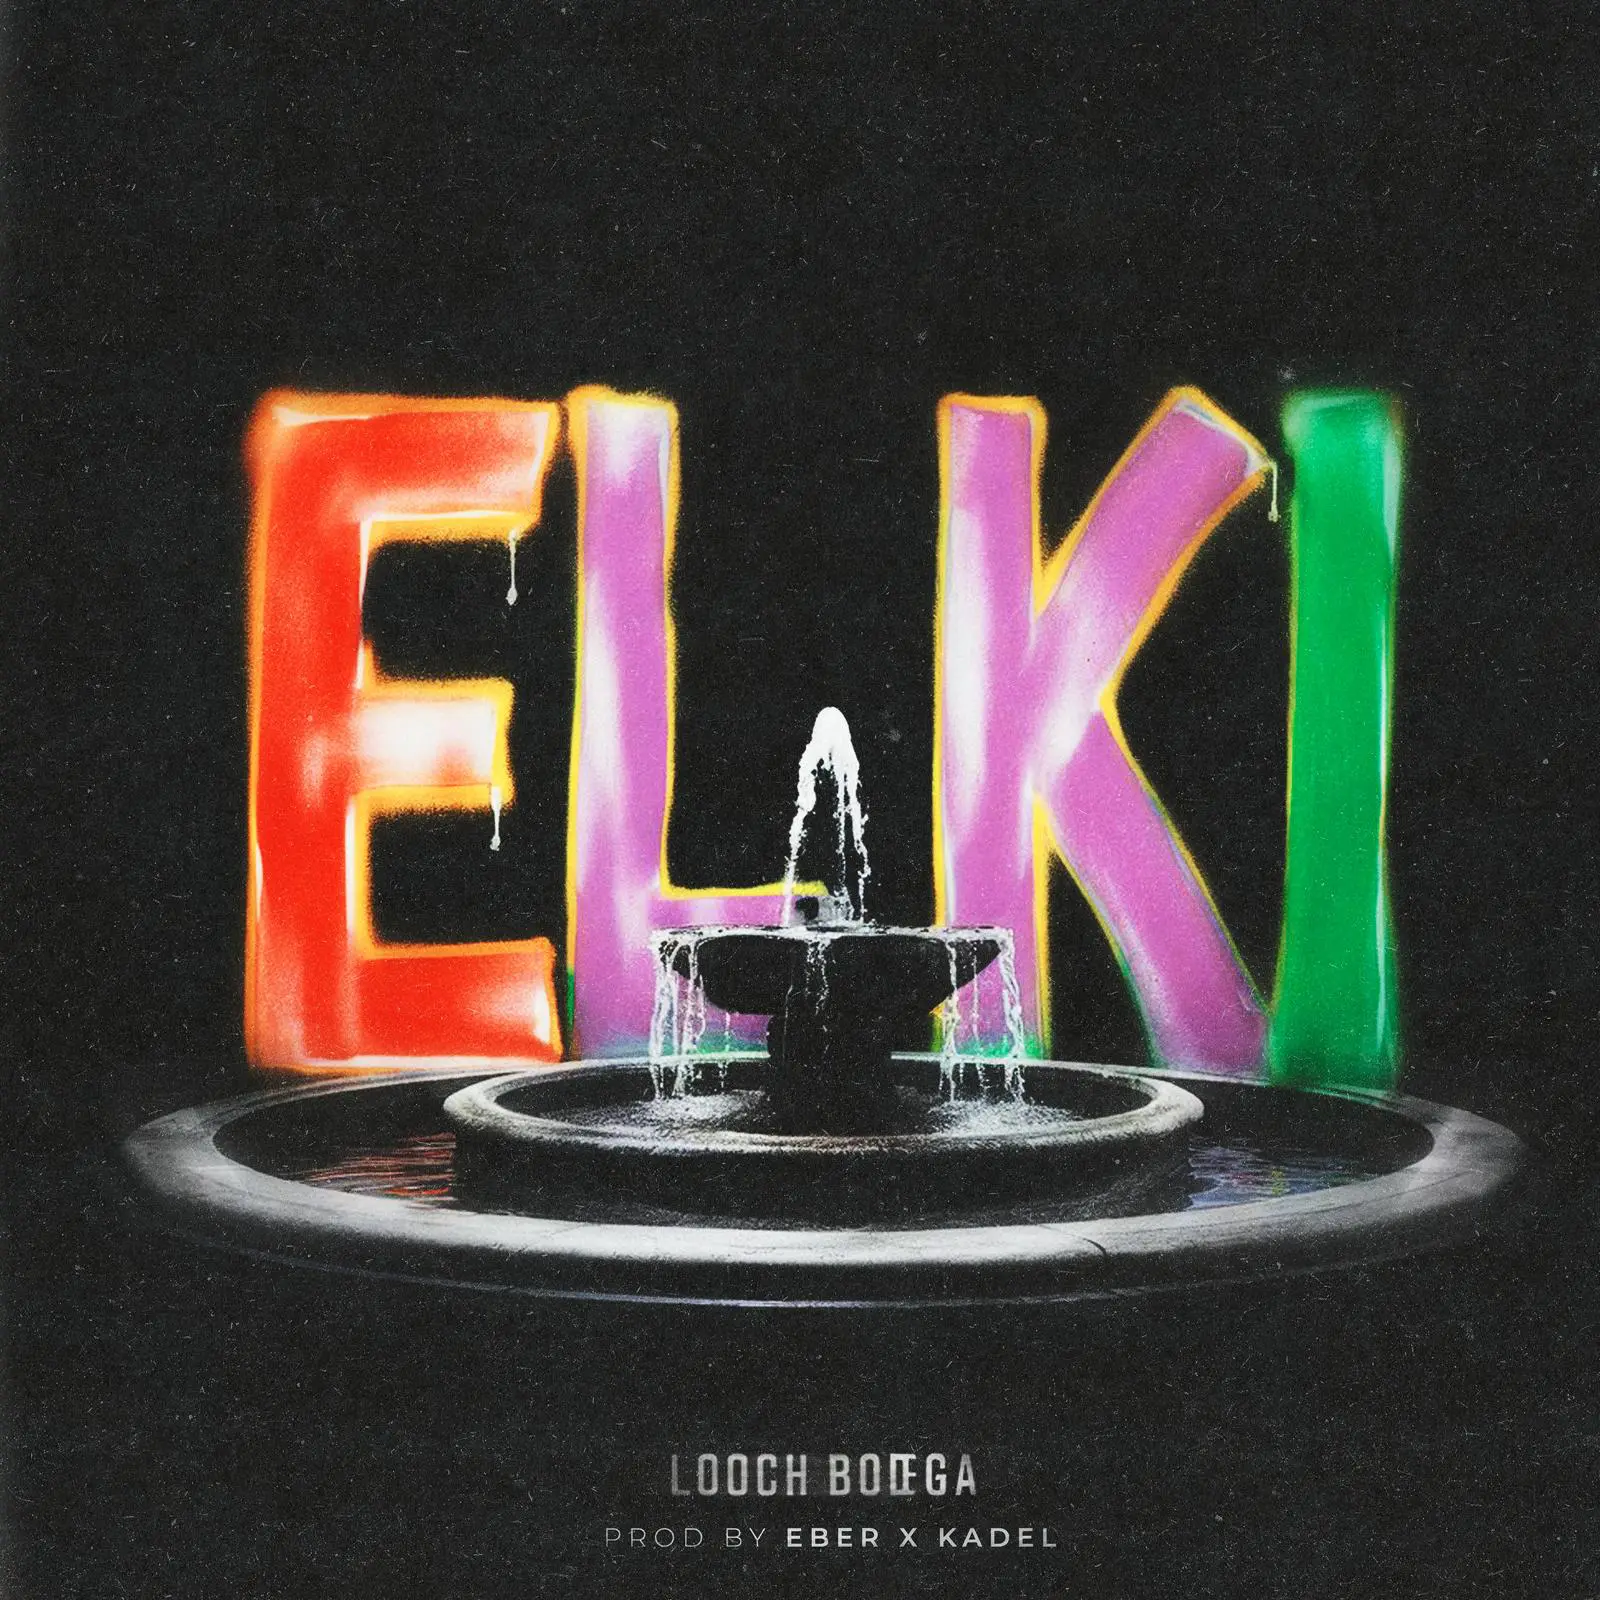 Looch Bodega debuta con “EL KI” en top 100 de Canadá Latin Sales. Foto fuente externa